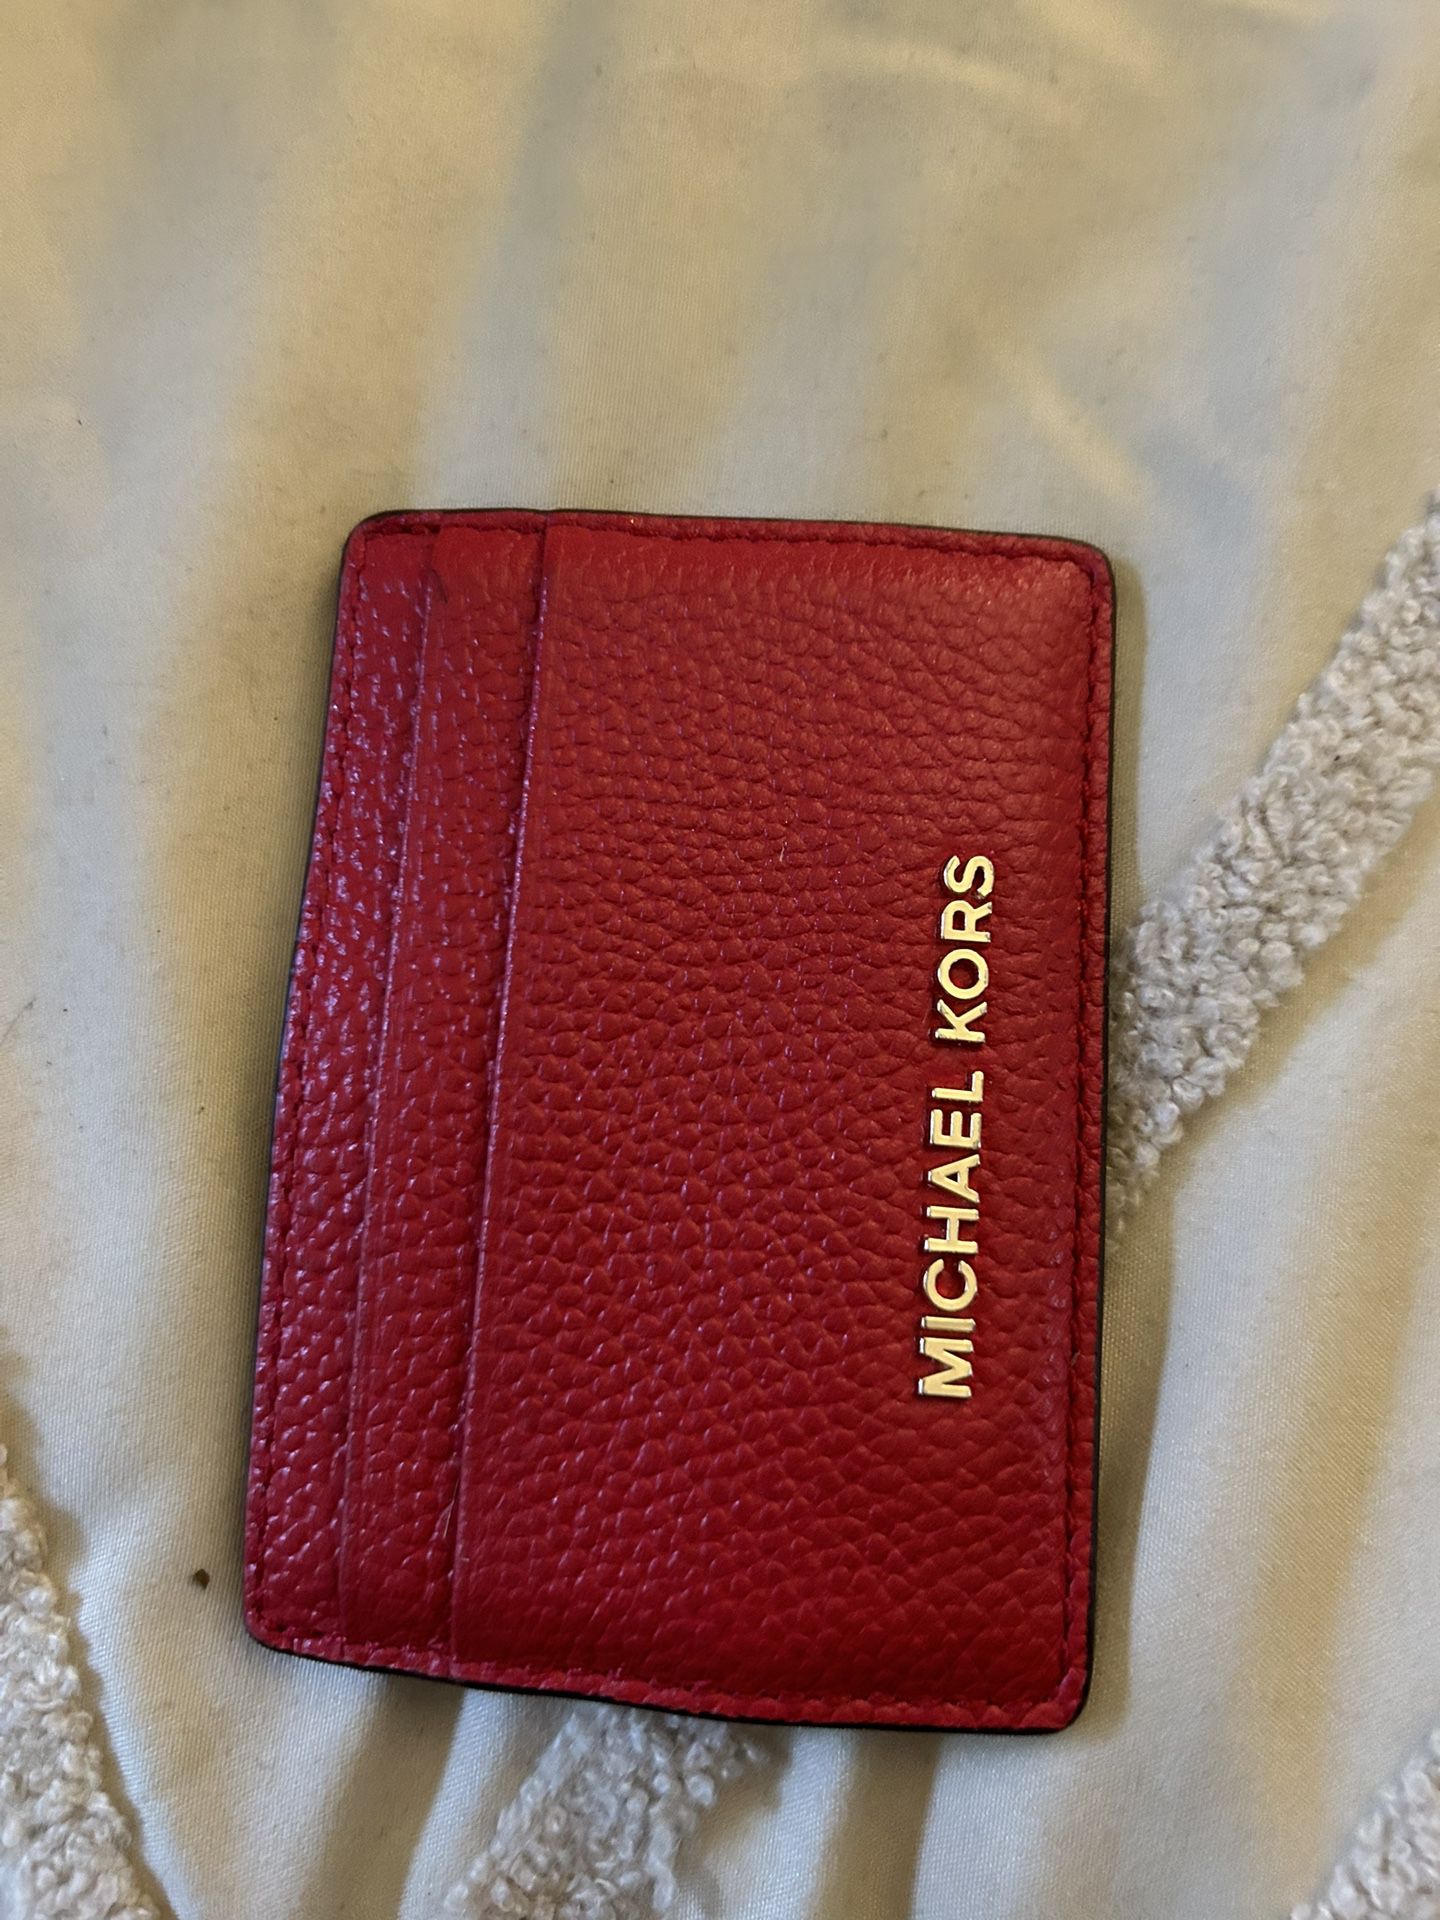 MK card case